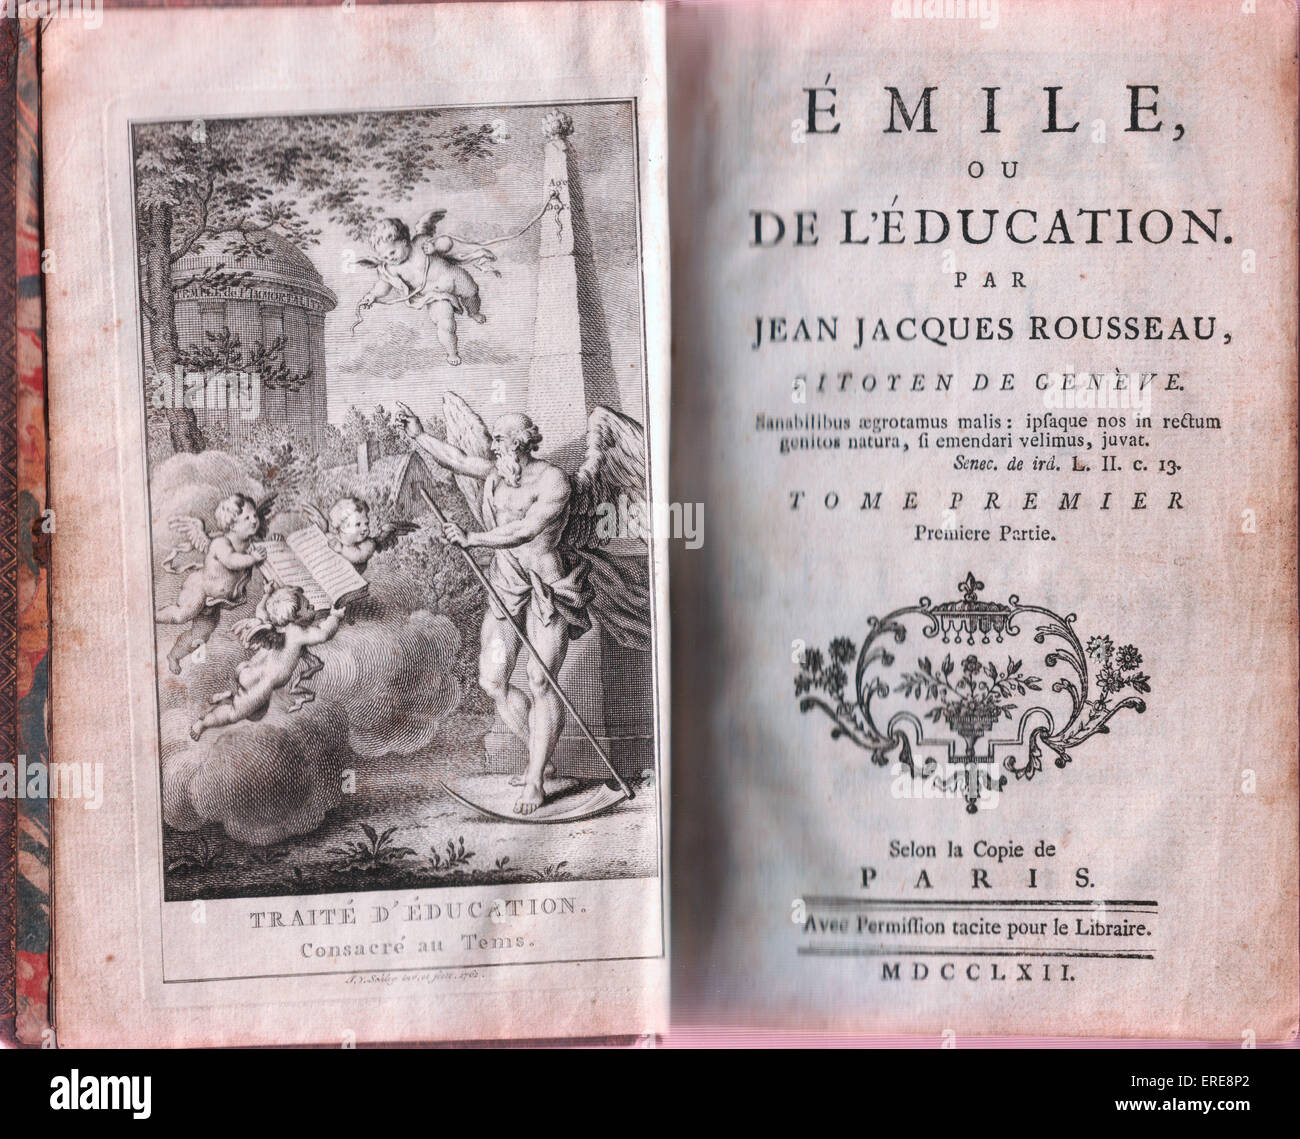 Emile, oder zur Bildung von Jean-Jacques Rousseau. Französischer Philosoph  & Schriftsteller (1712-1778). Titelseite & Frontispiz des original-Ausgabe,  veröffentlicht im Mai 1762 Stockfotografie - Alamy